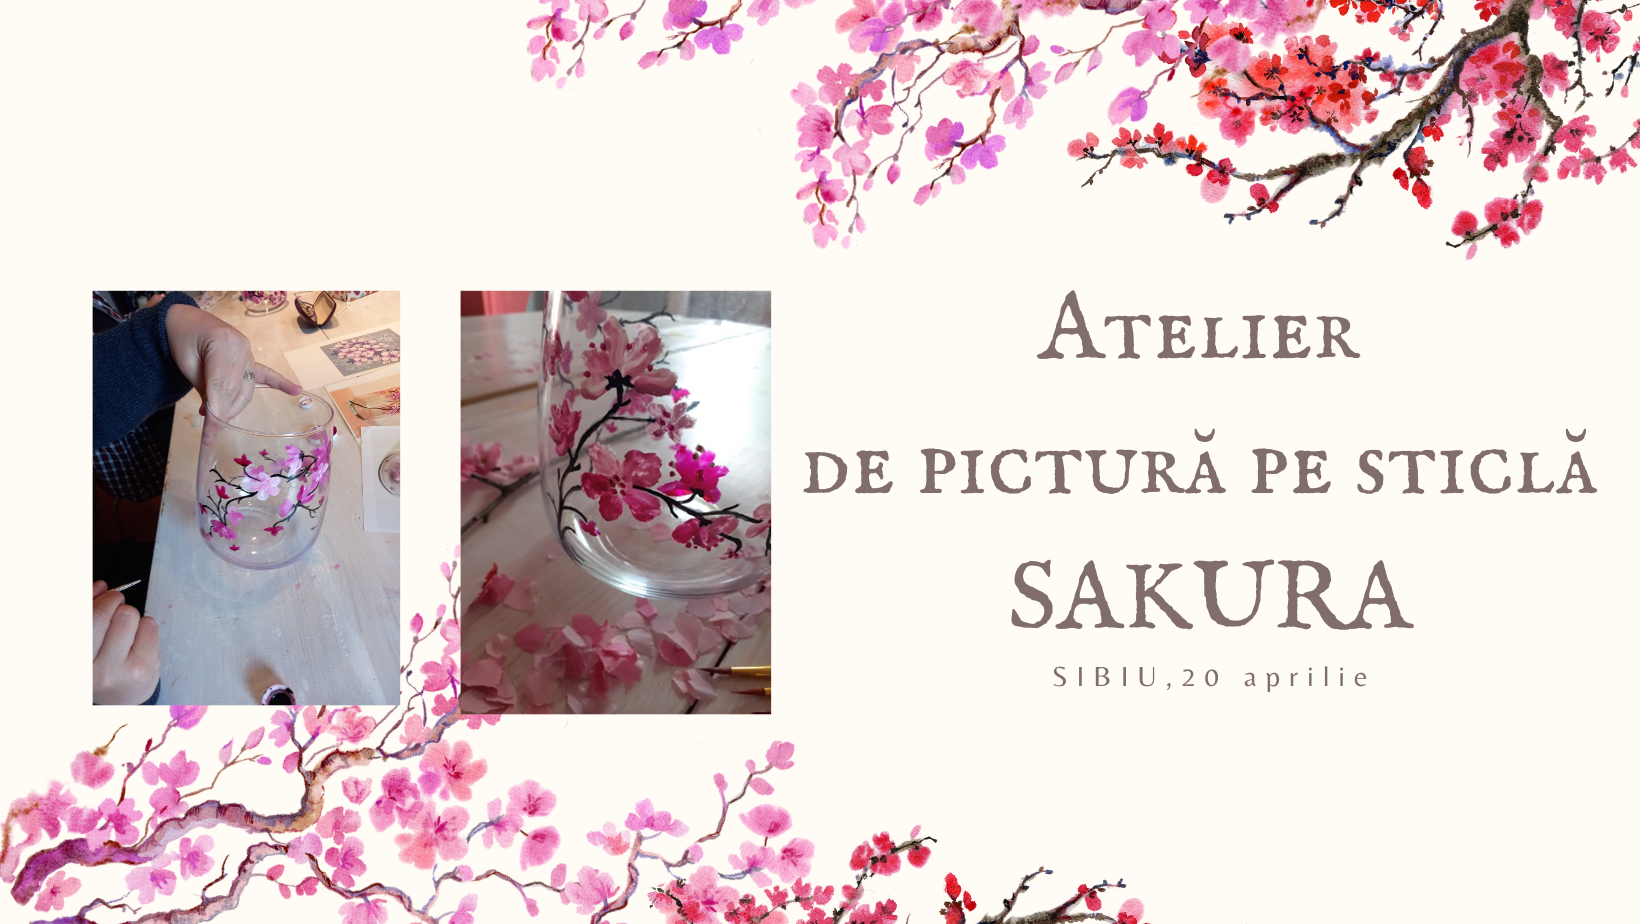 Atelier de pictură pe sticlă Sakura